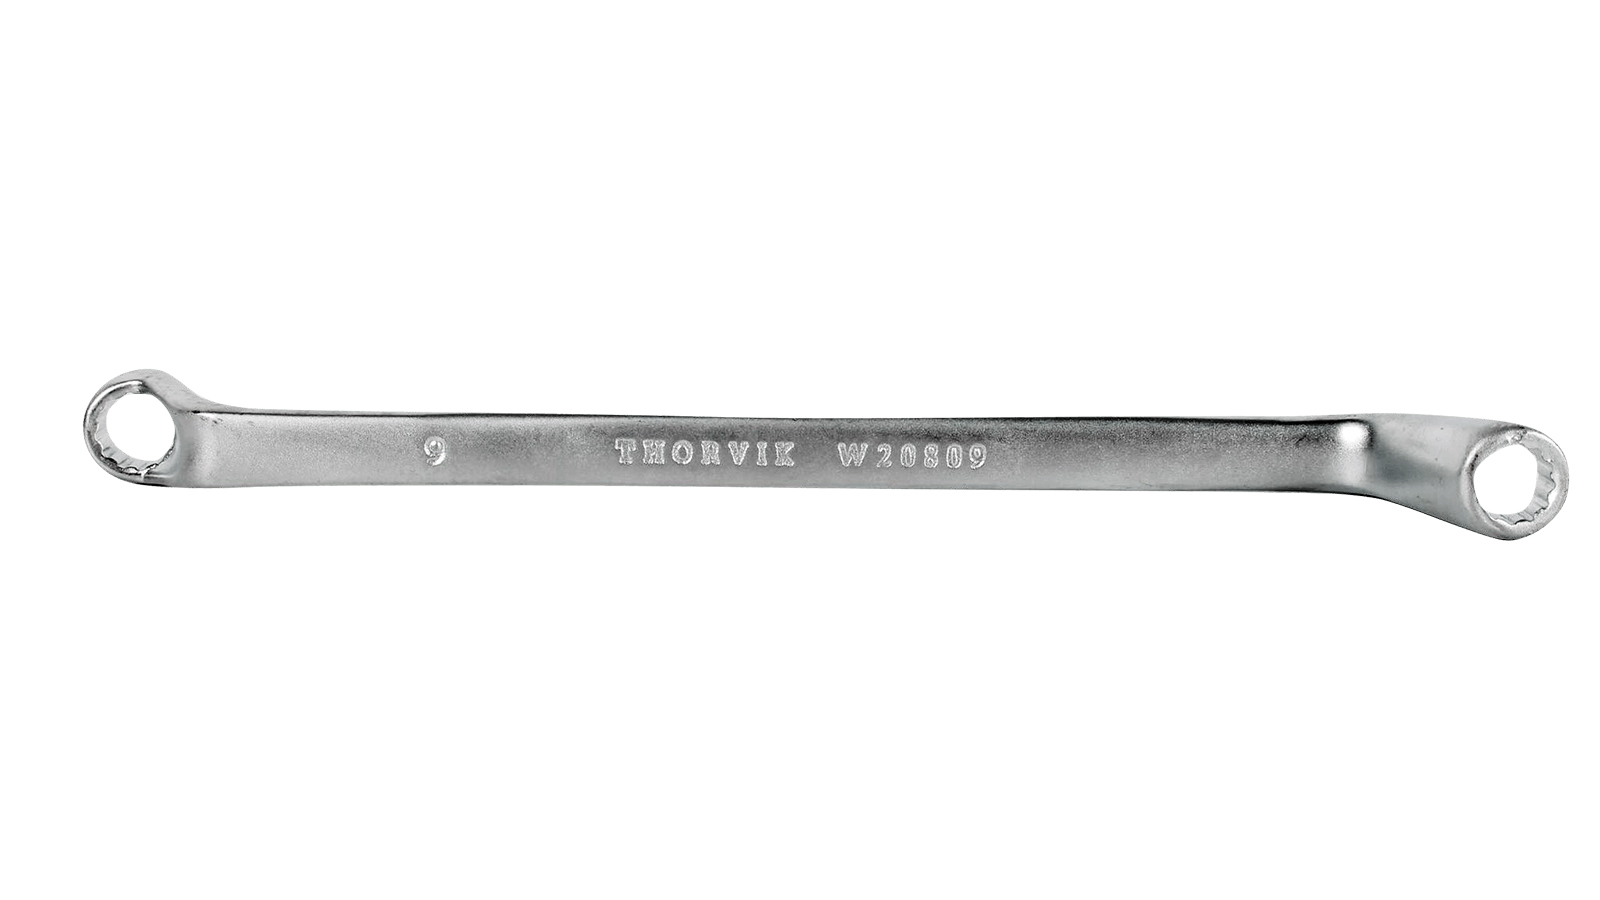 Ключ Накидной  8 Х 9 Thorvik Серии Arc THORVIK арт. W20809 крестообразный баллонный ключ thorvik